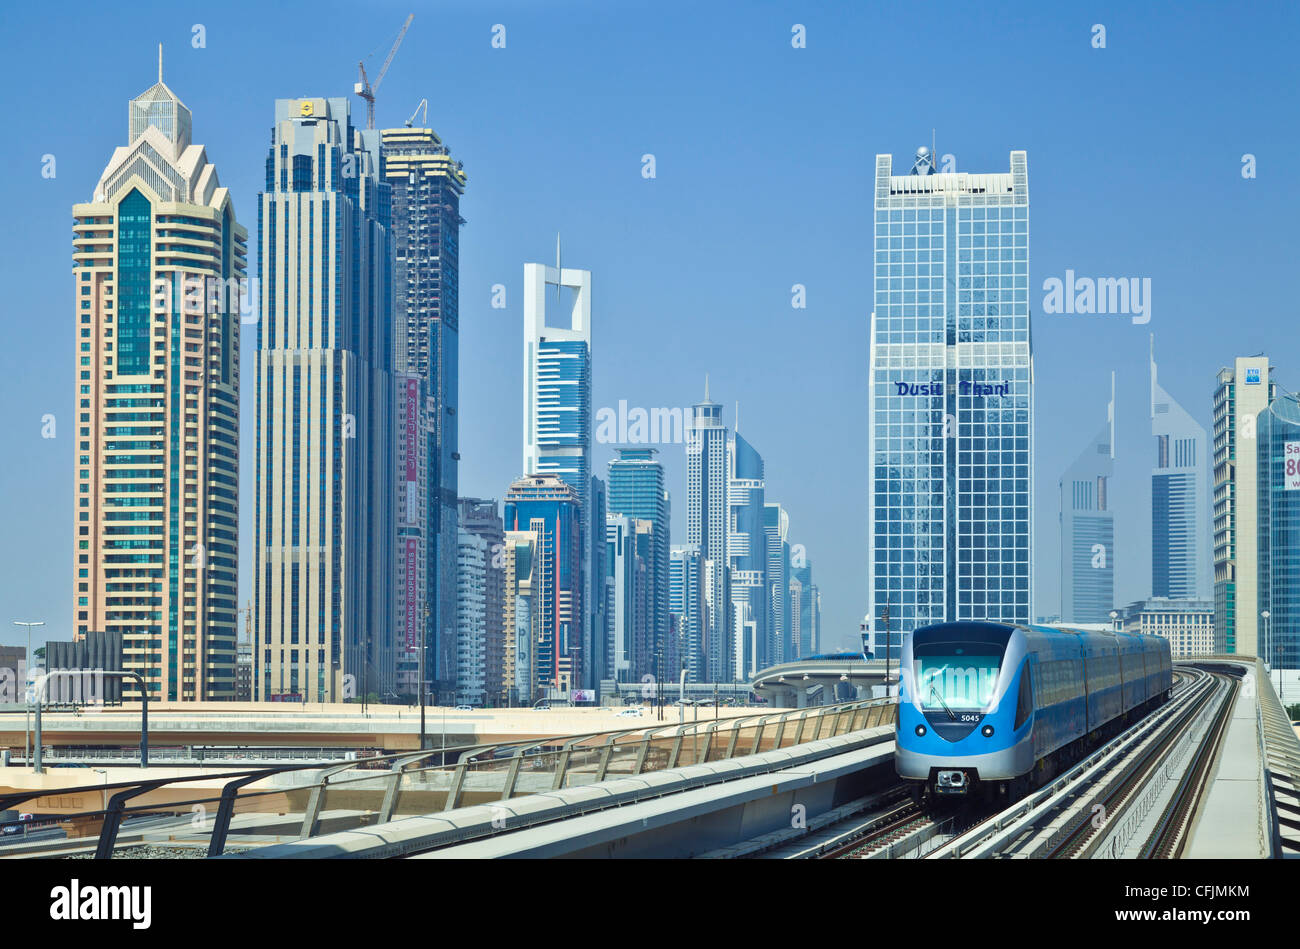 Sheikh Zayed Road des toits de bâtiments de grande hauteur et gratte-ciel, métro et train, la ville de Dubaï, Émirats arabes unis, Moyen Orient Banque D'Images